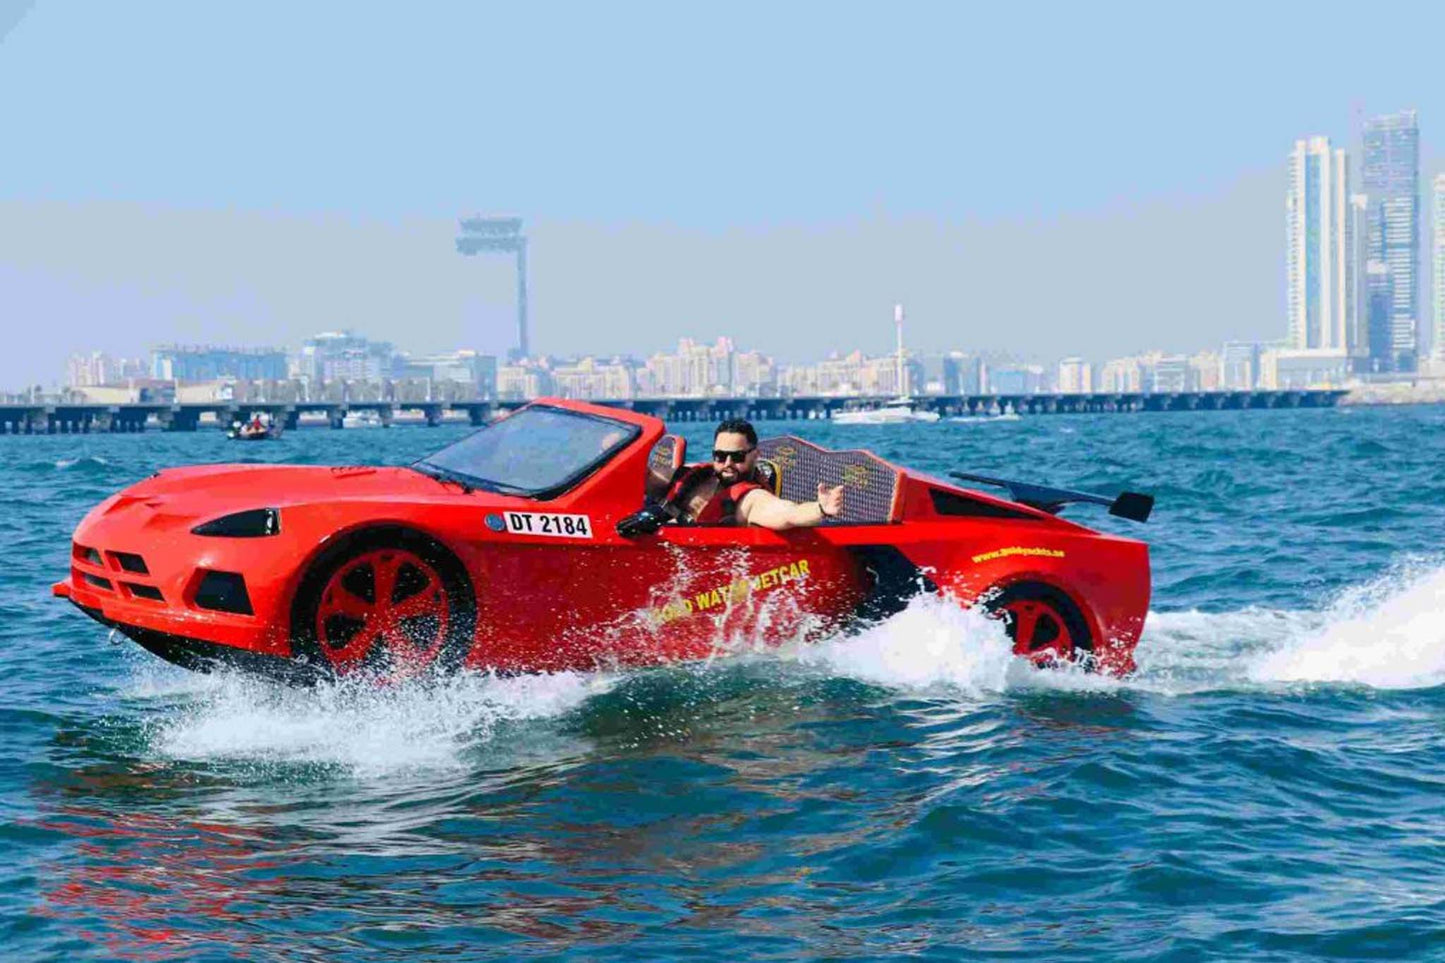 Экскурсия на реактивном автомобиле по Дубаю в Дубай Марина